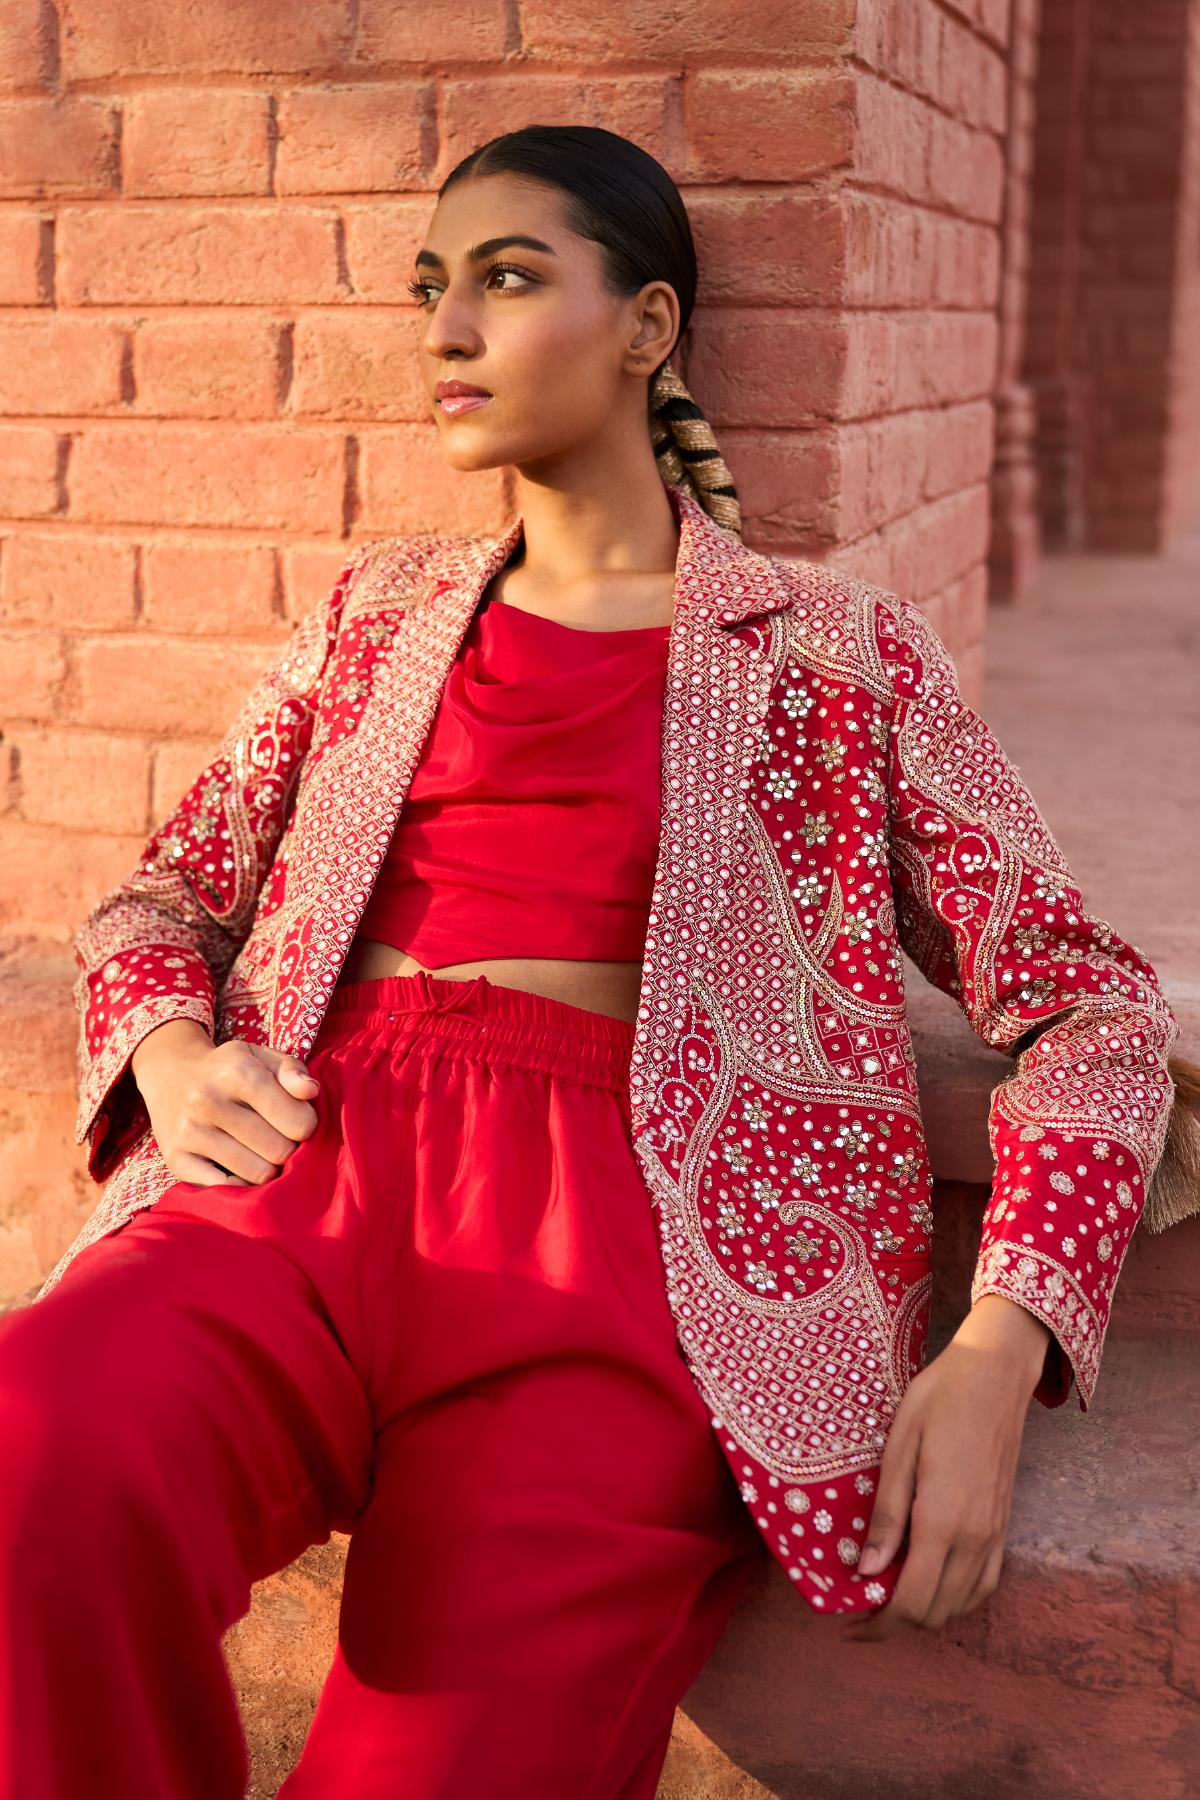 The Jaipur Pant Suit